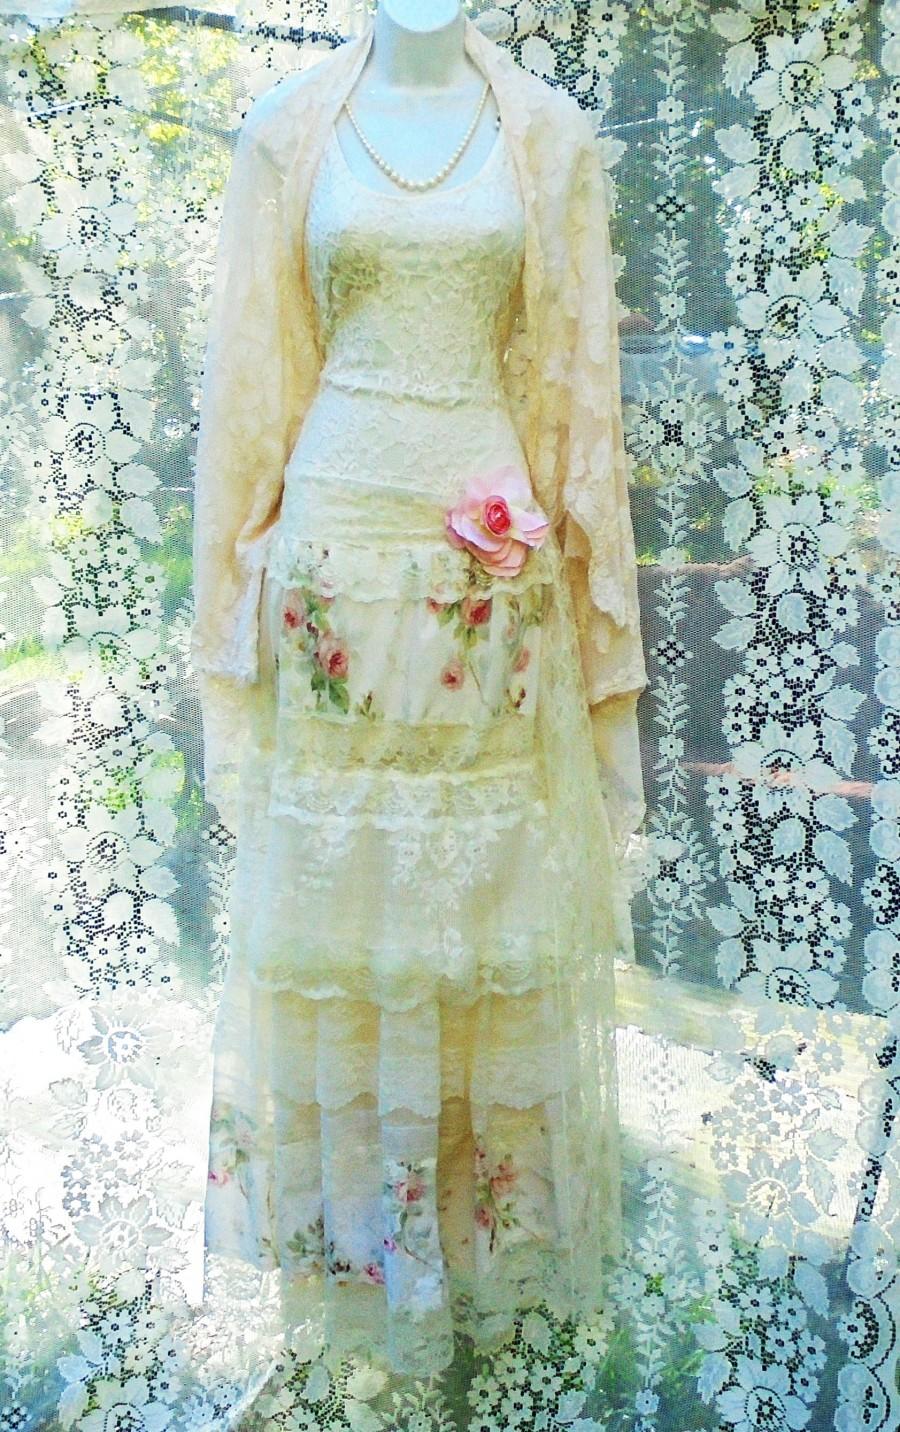 زفاف - Floral lace dress wedding tulle romantic boho outdoor bride small  by vintage opulence on Etsy